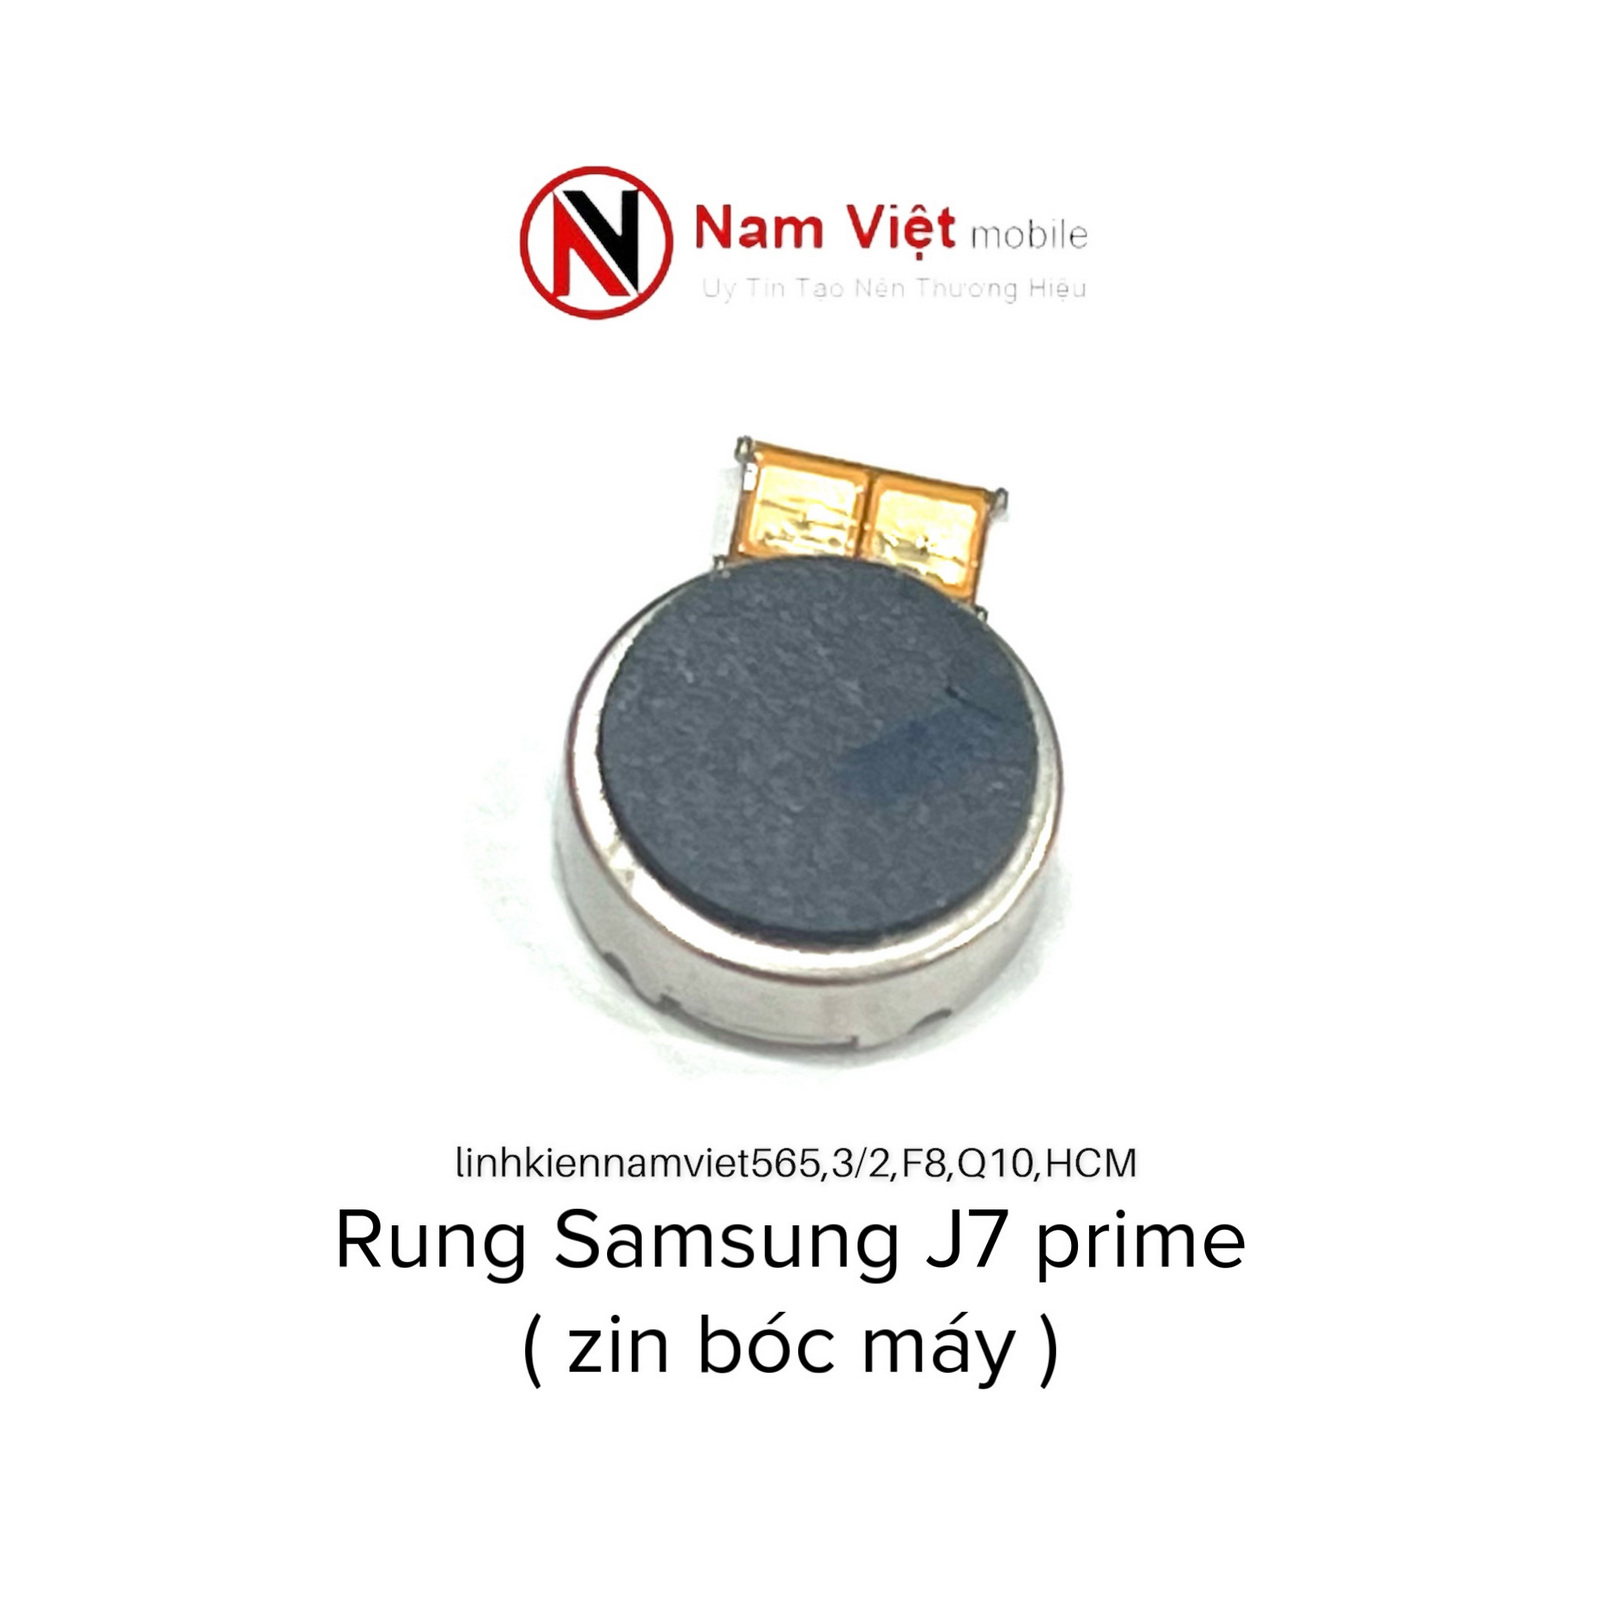 Rung Samsung J7 prime ( zin bóc máy)